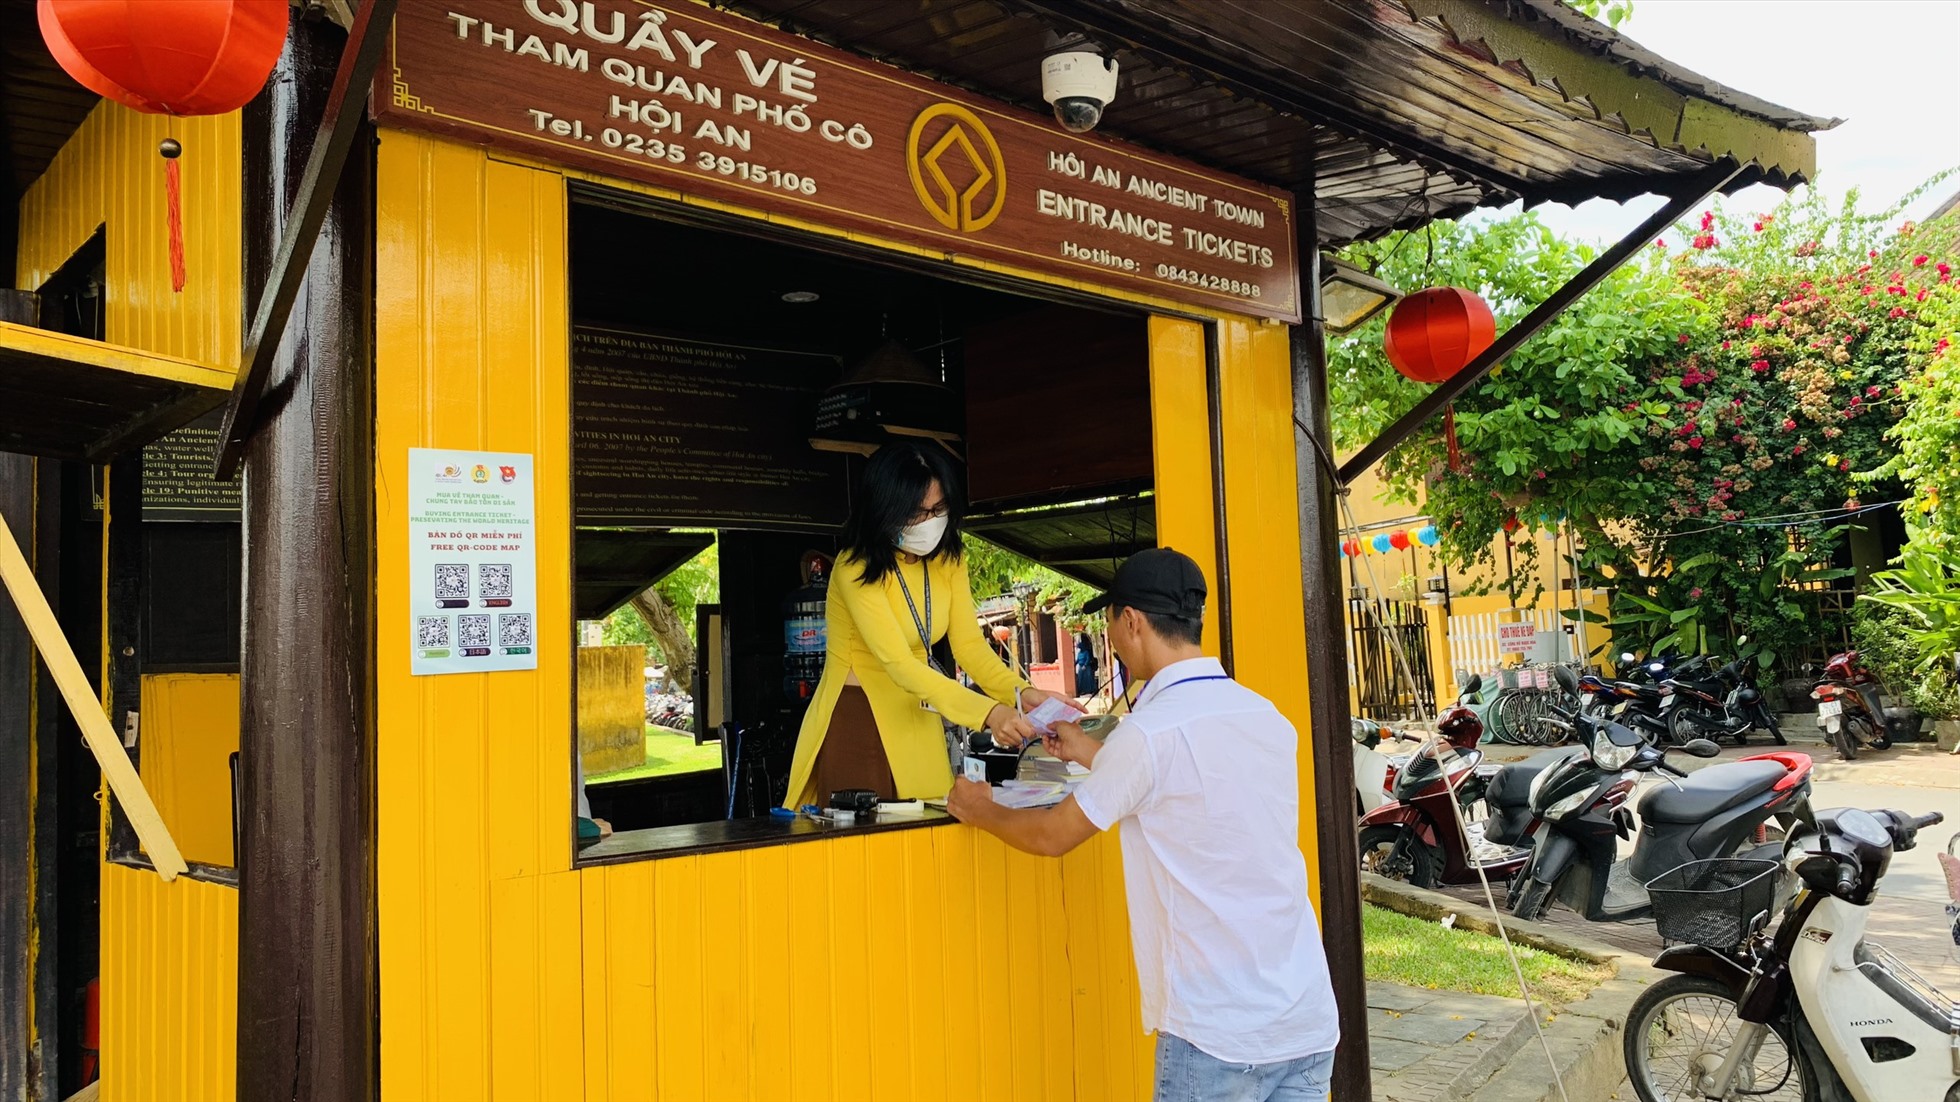 Hướng dẫn viên du lịch mua vé cho đoàn khách tham quan vào phố cổ Hội An tại điểm bán vé gần quảng trường sông Hoài. Ảnh Hoàng Bin